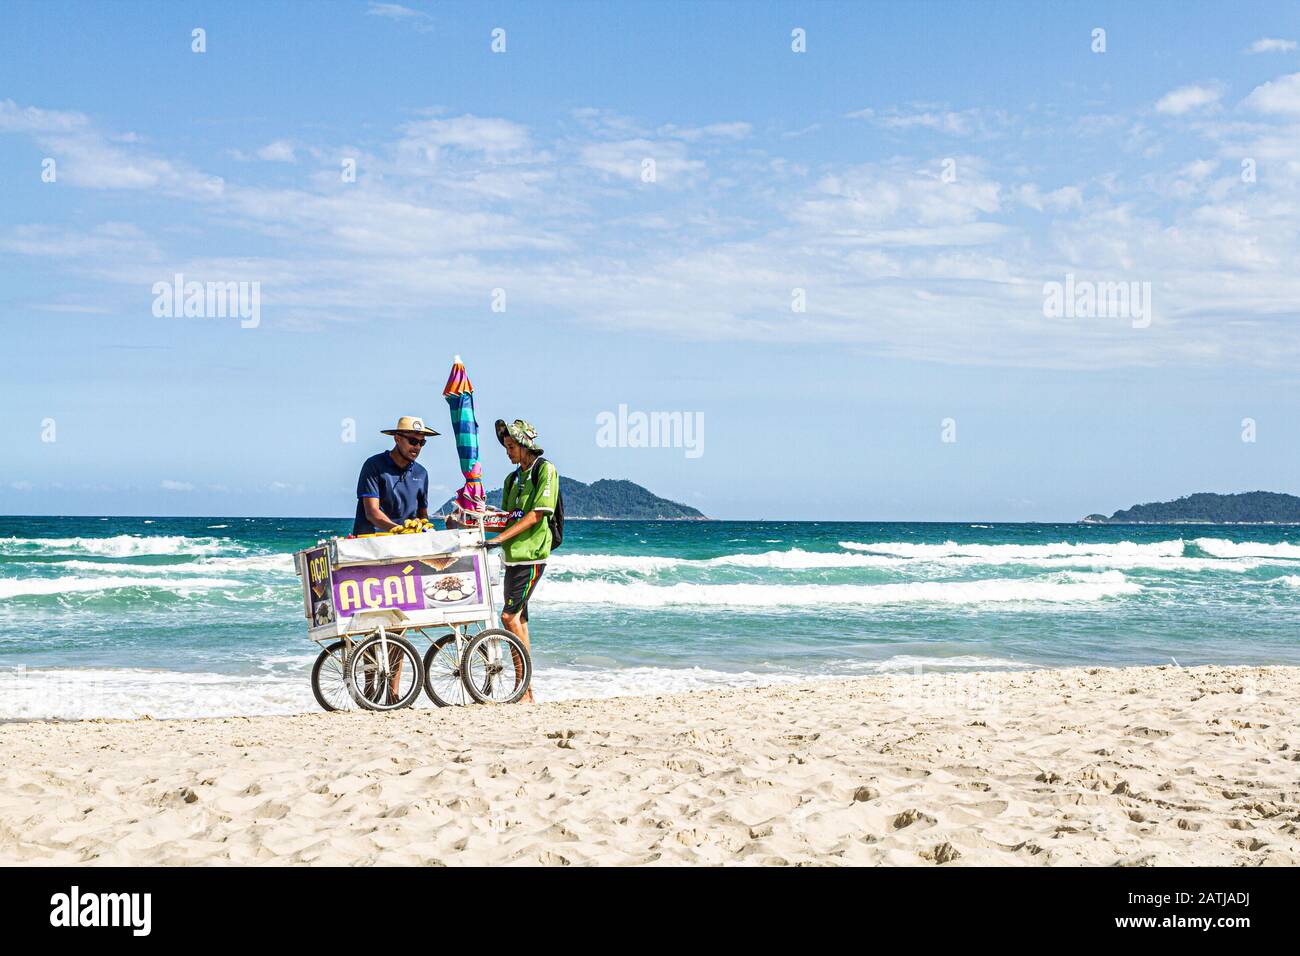 Strandverkäuferin am Acores Beach. Florianopolis, Santa Catarina, Brasilien. Stockfoto